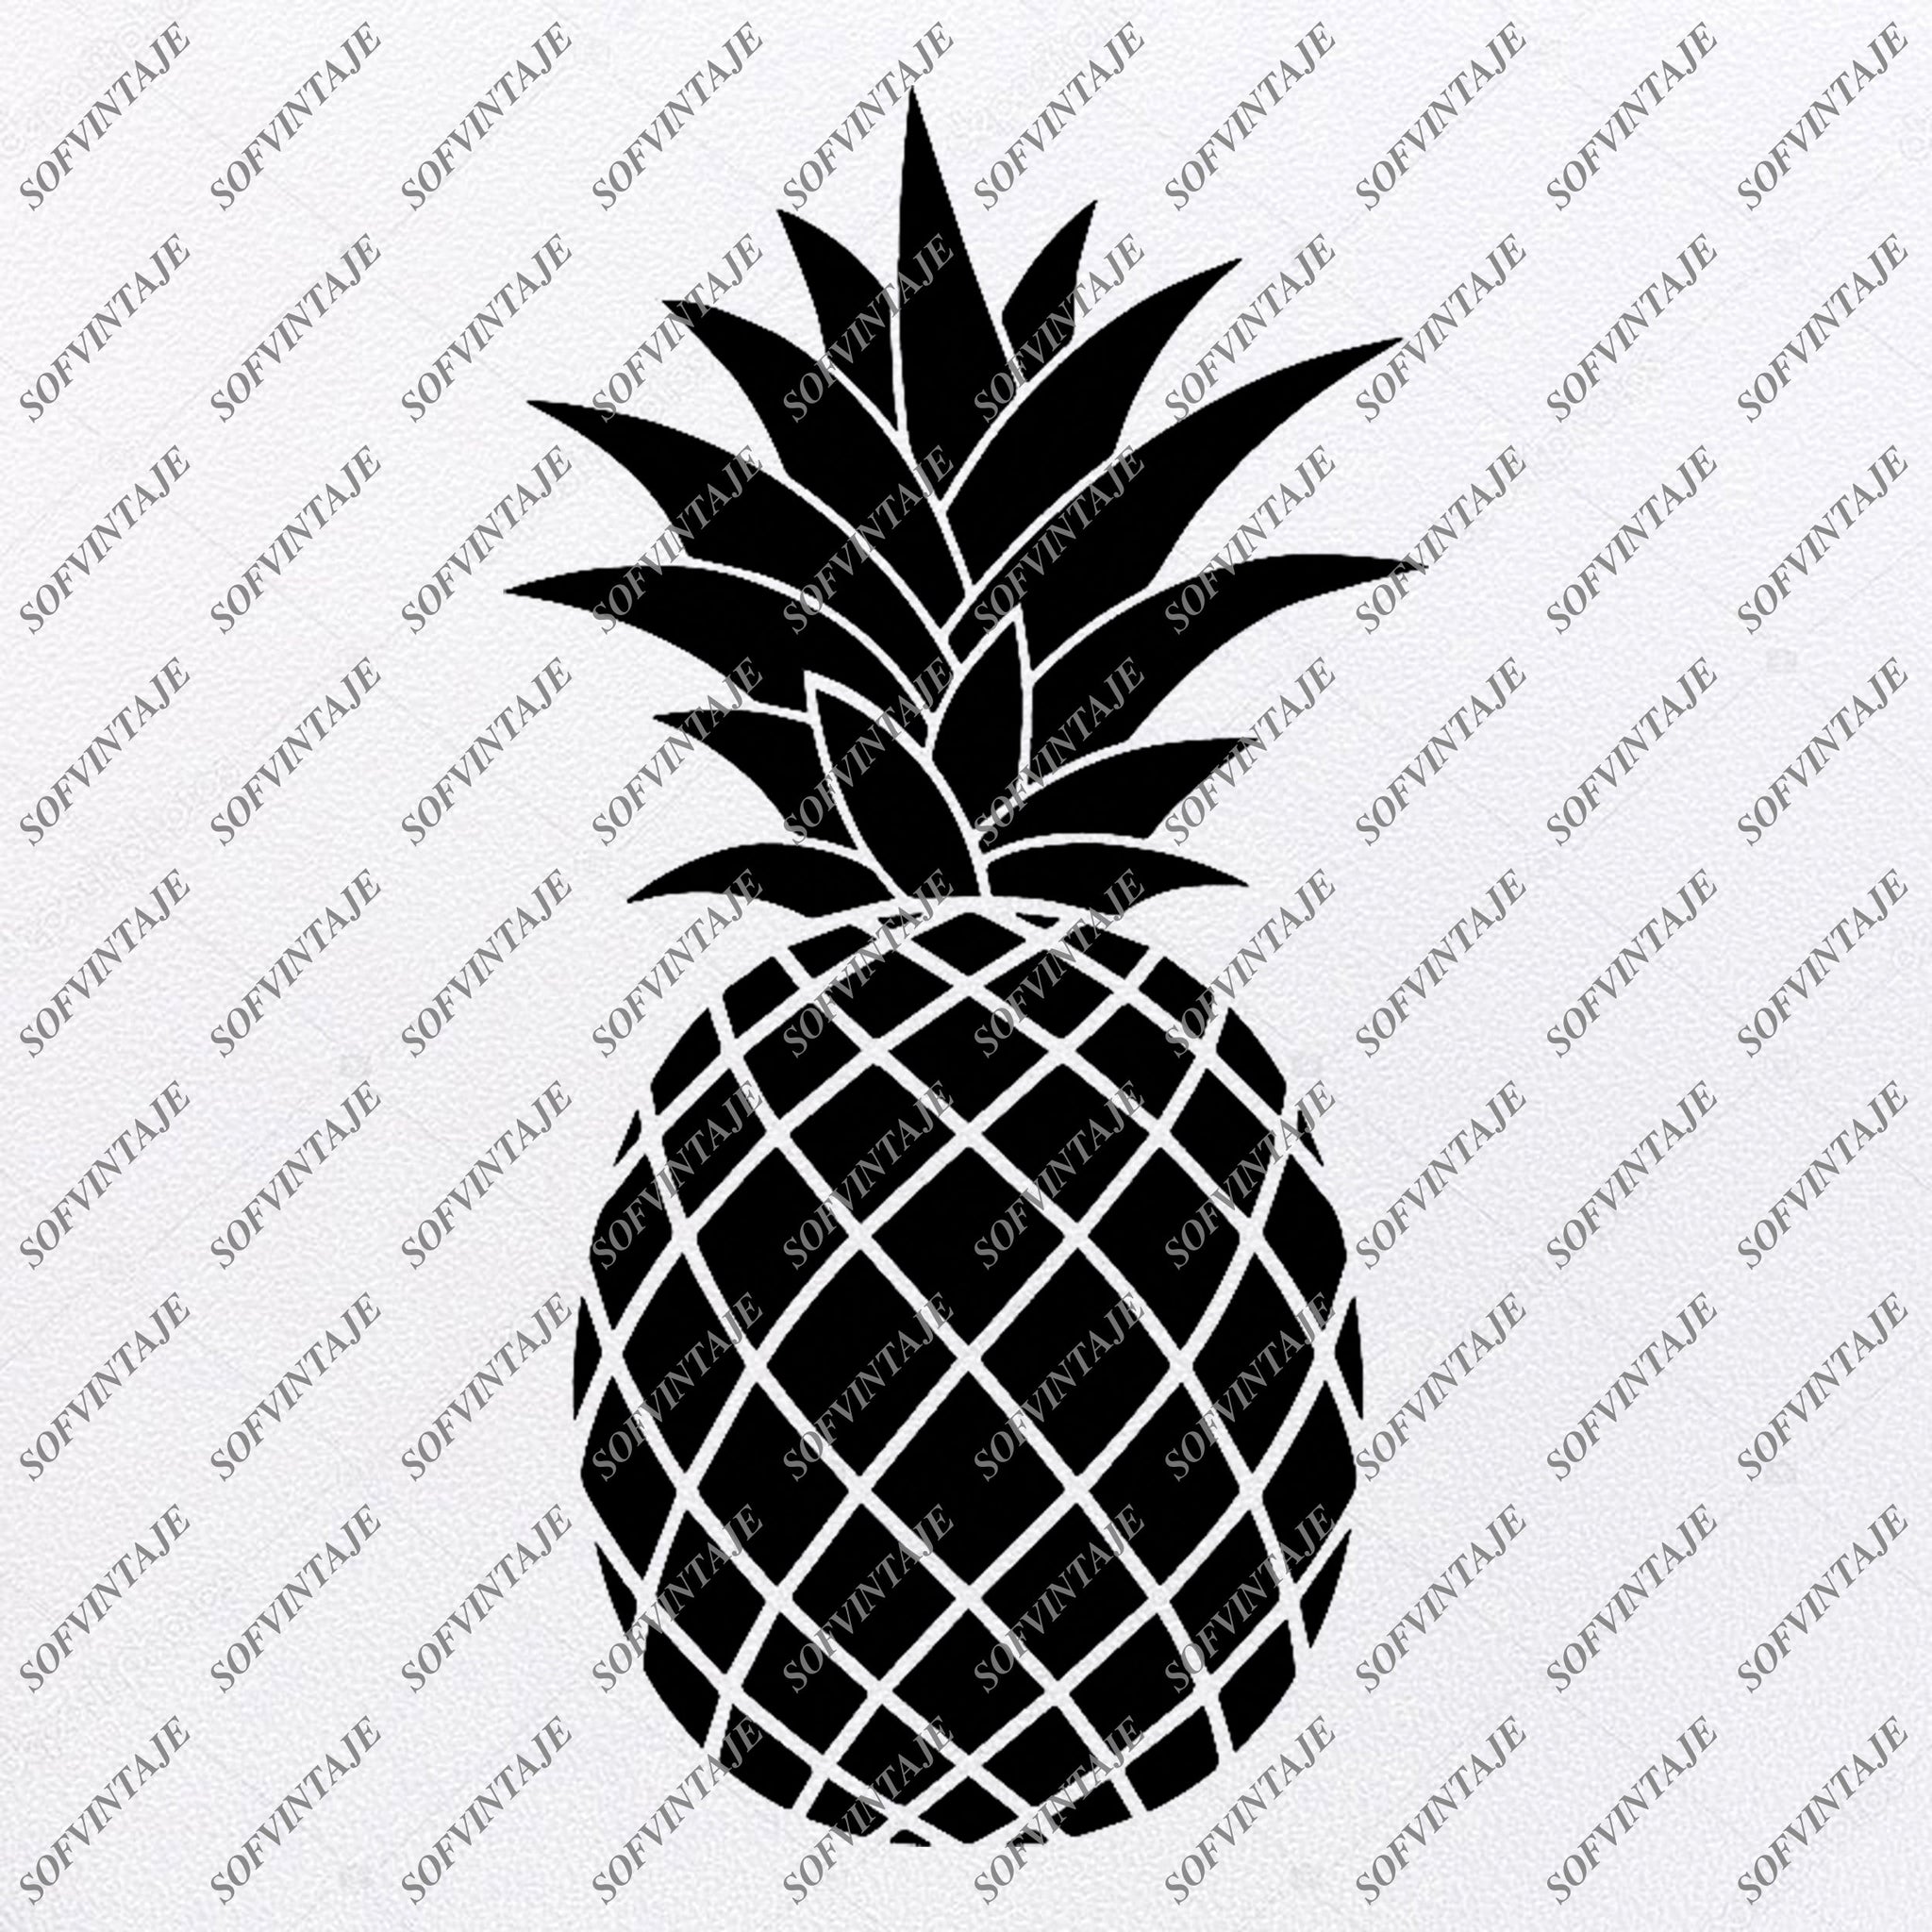 Download Pineapple Svg File Pineapple Svg Pineapple Png Fruit Svg Pinea Sofvintaje SVG, PNG, EPS, DXF File